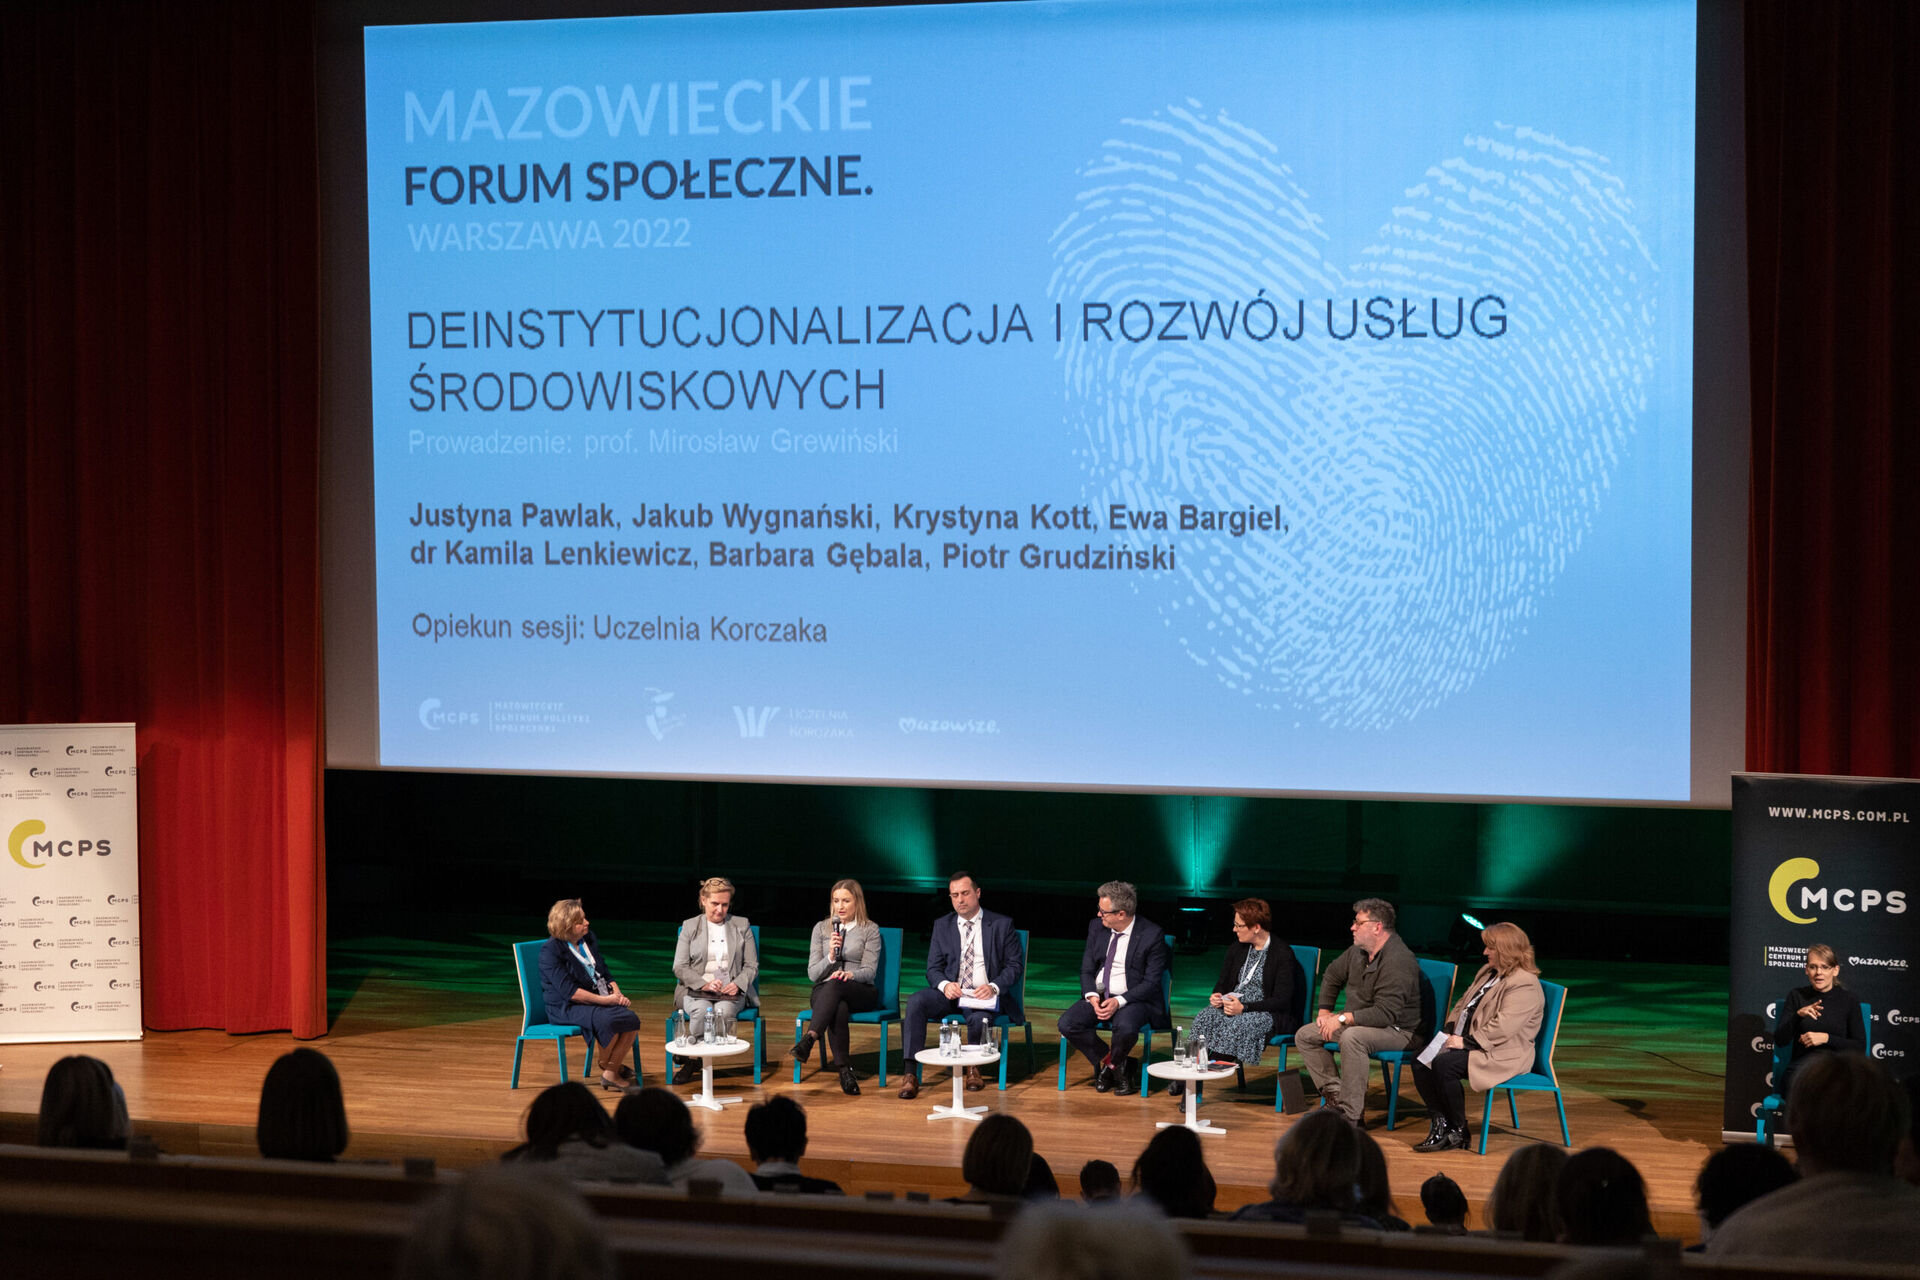 Mazowieckie Forum Społeczne. Warszawa 2022